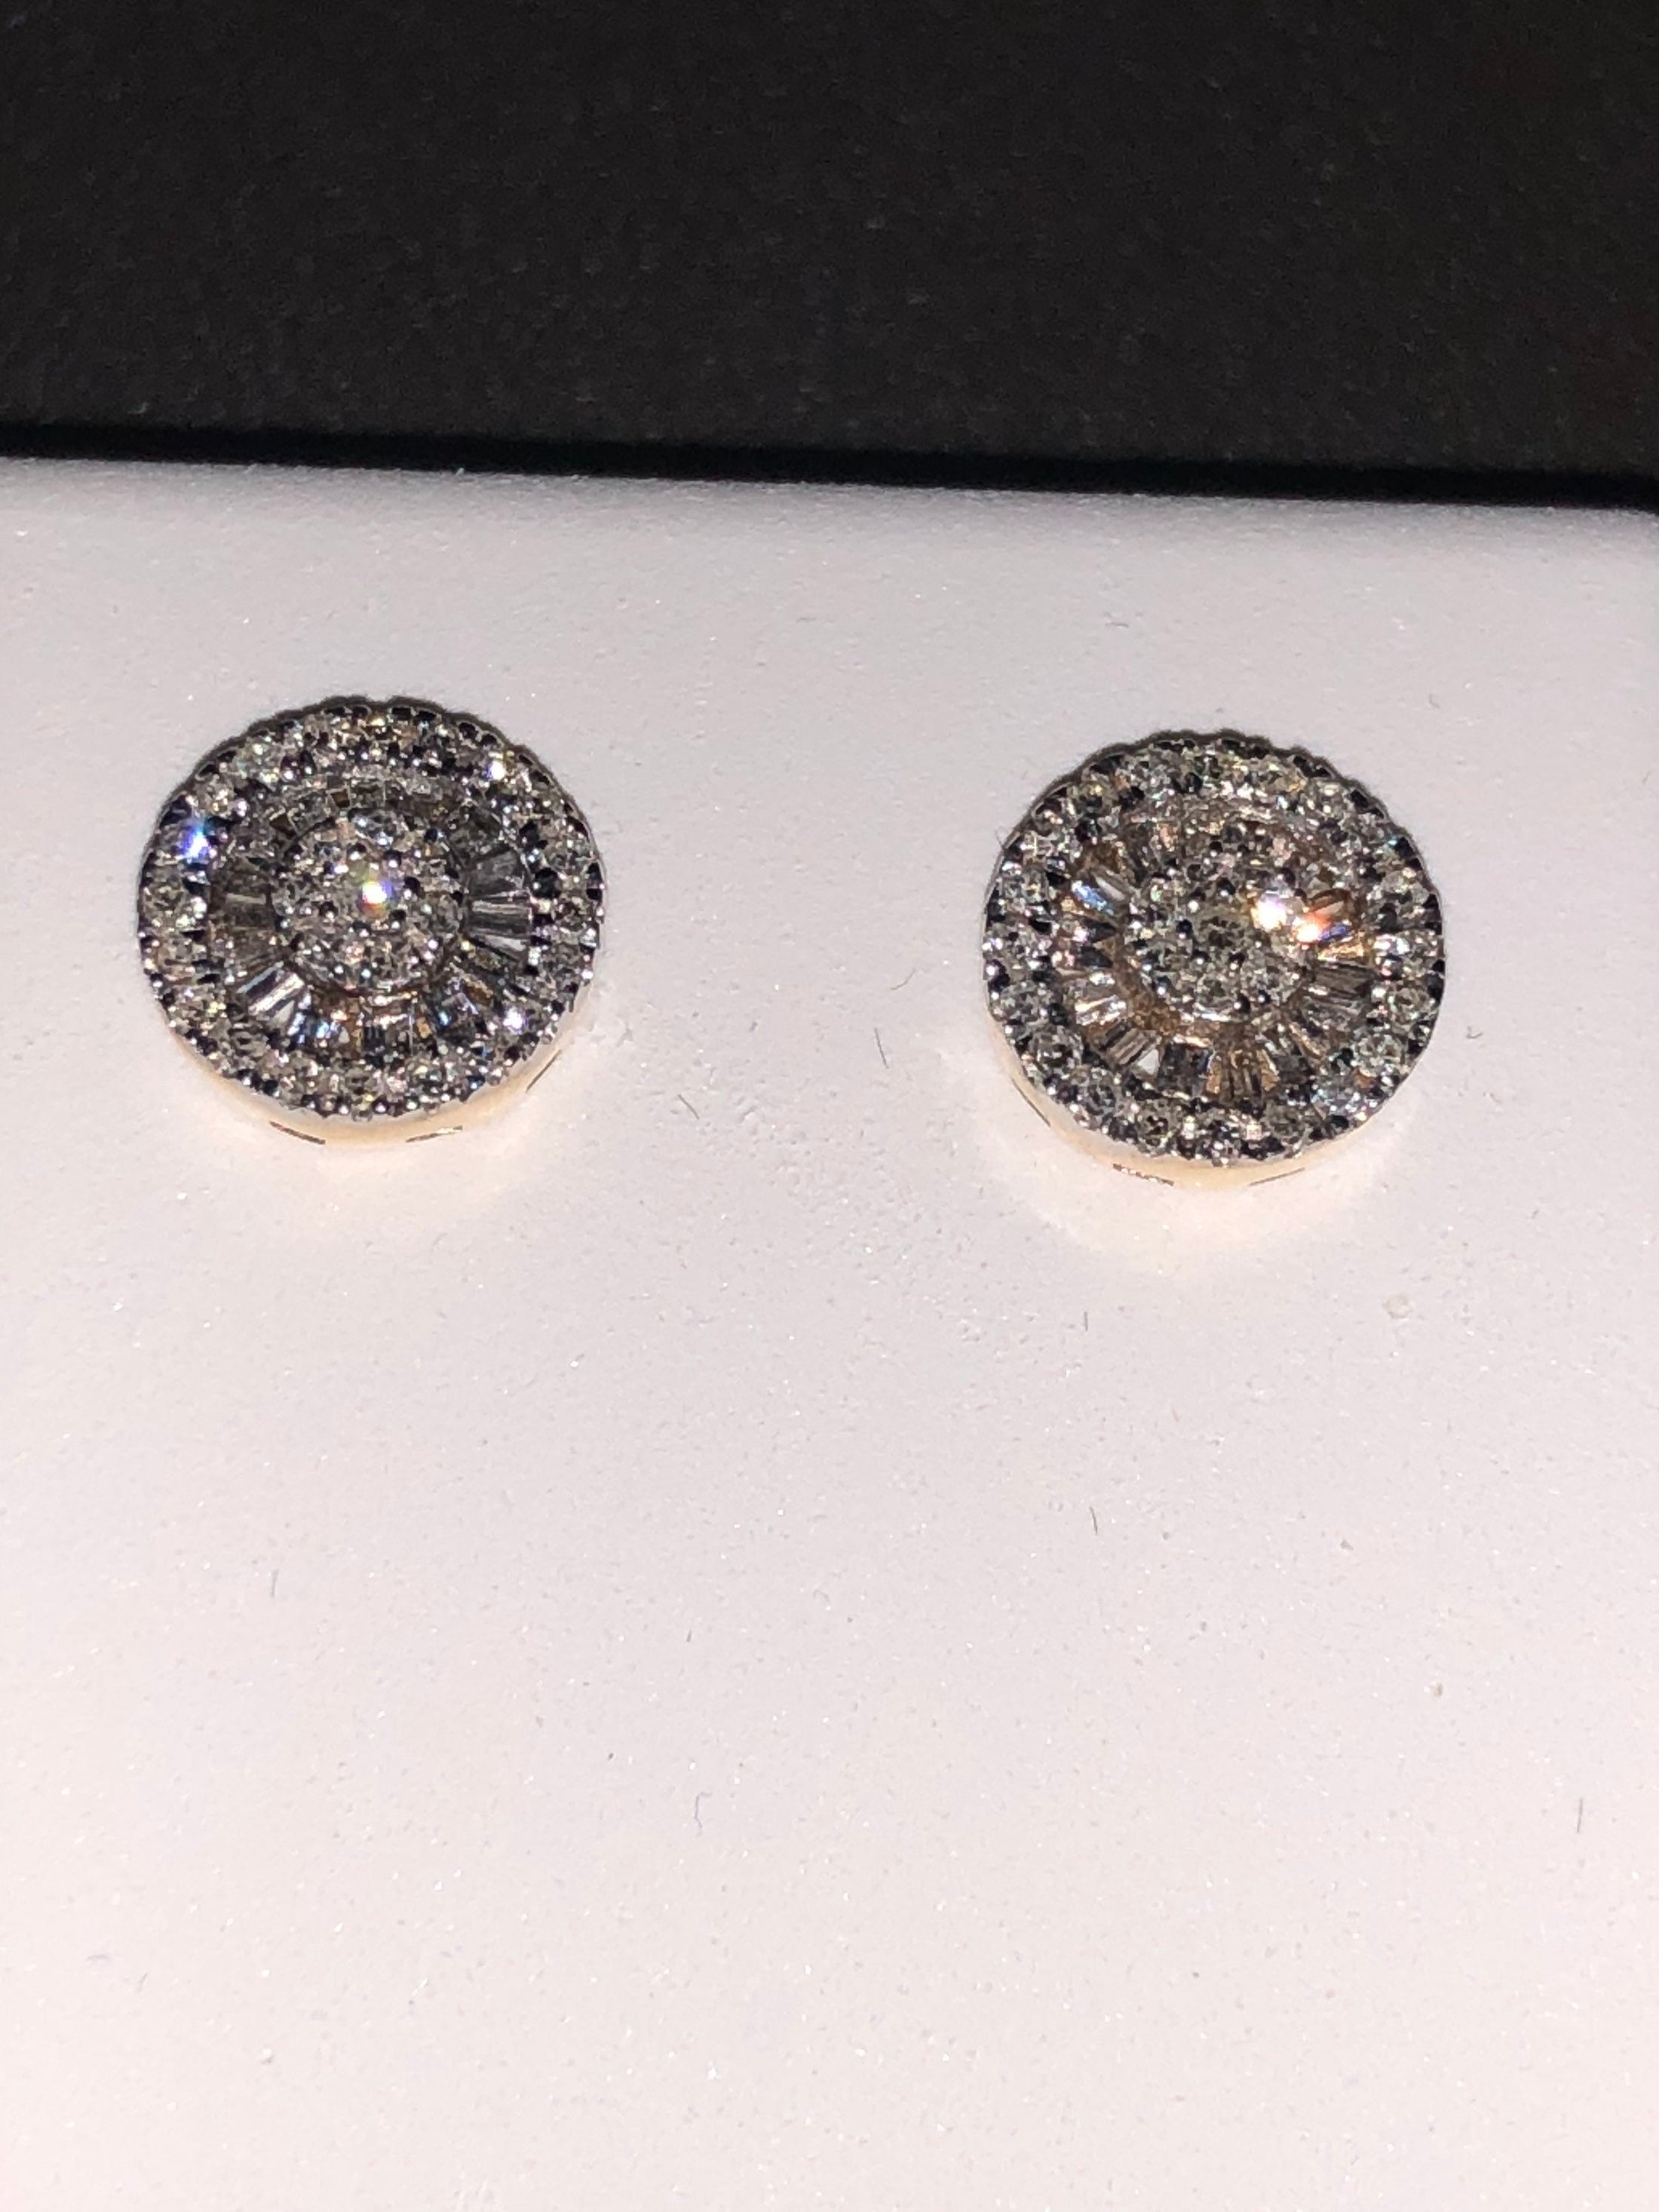 Real Diamond Earring | Stunning Diamond Earring | Diamond Sparkle Stud Earring | 10k Gold Engagement Earrings | Diamond Jewelry Gift For Mom